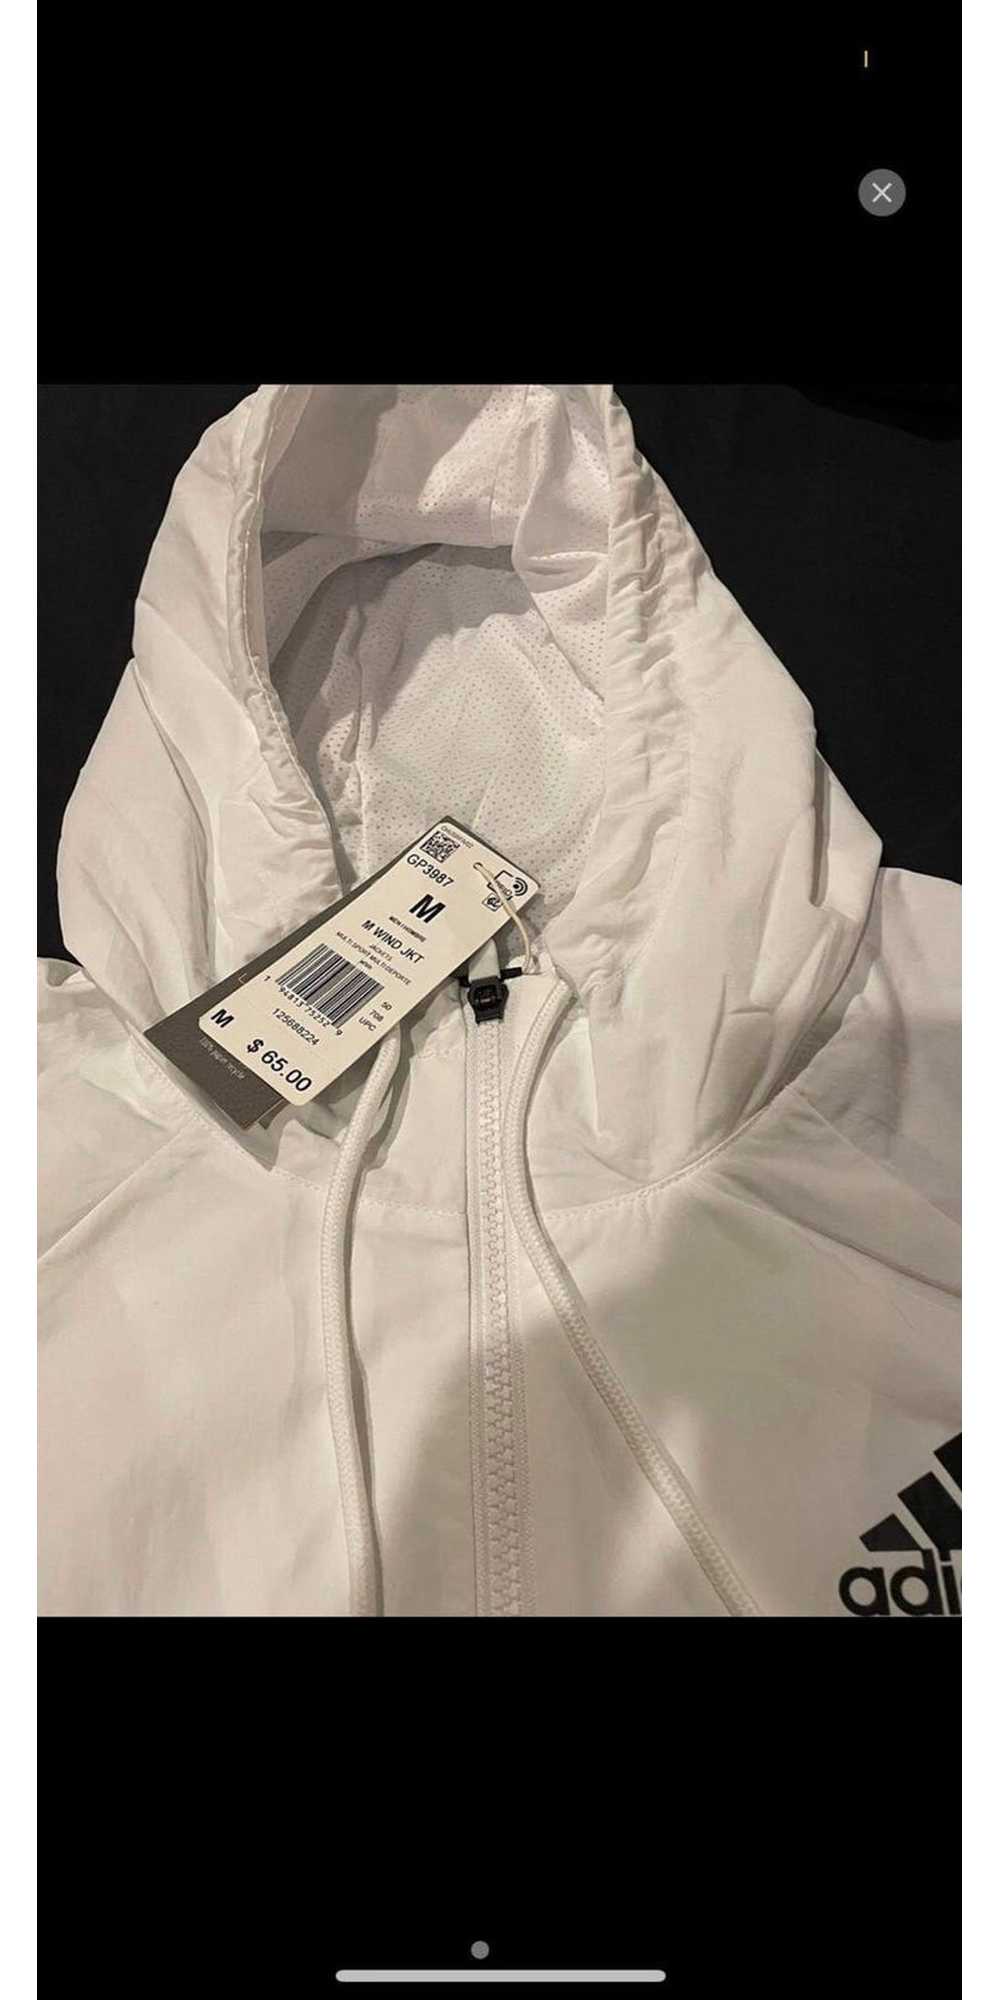 Adidas Adidas bomber jacket - image 2